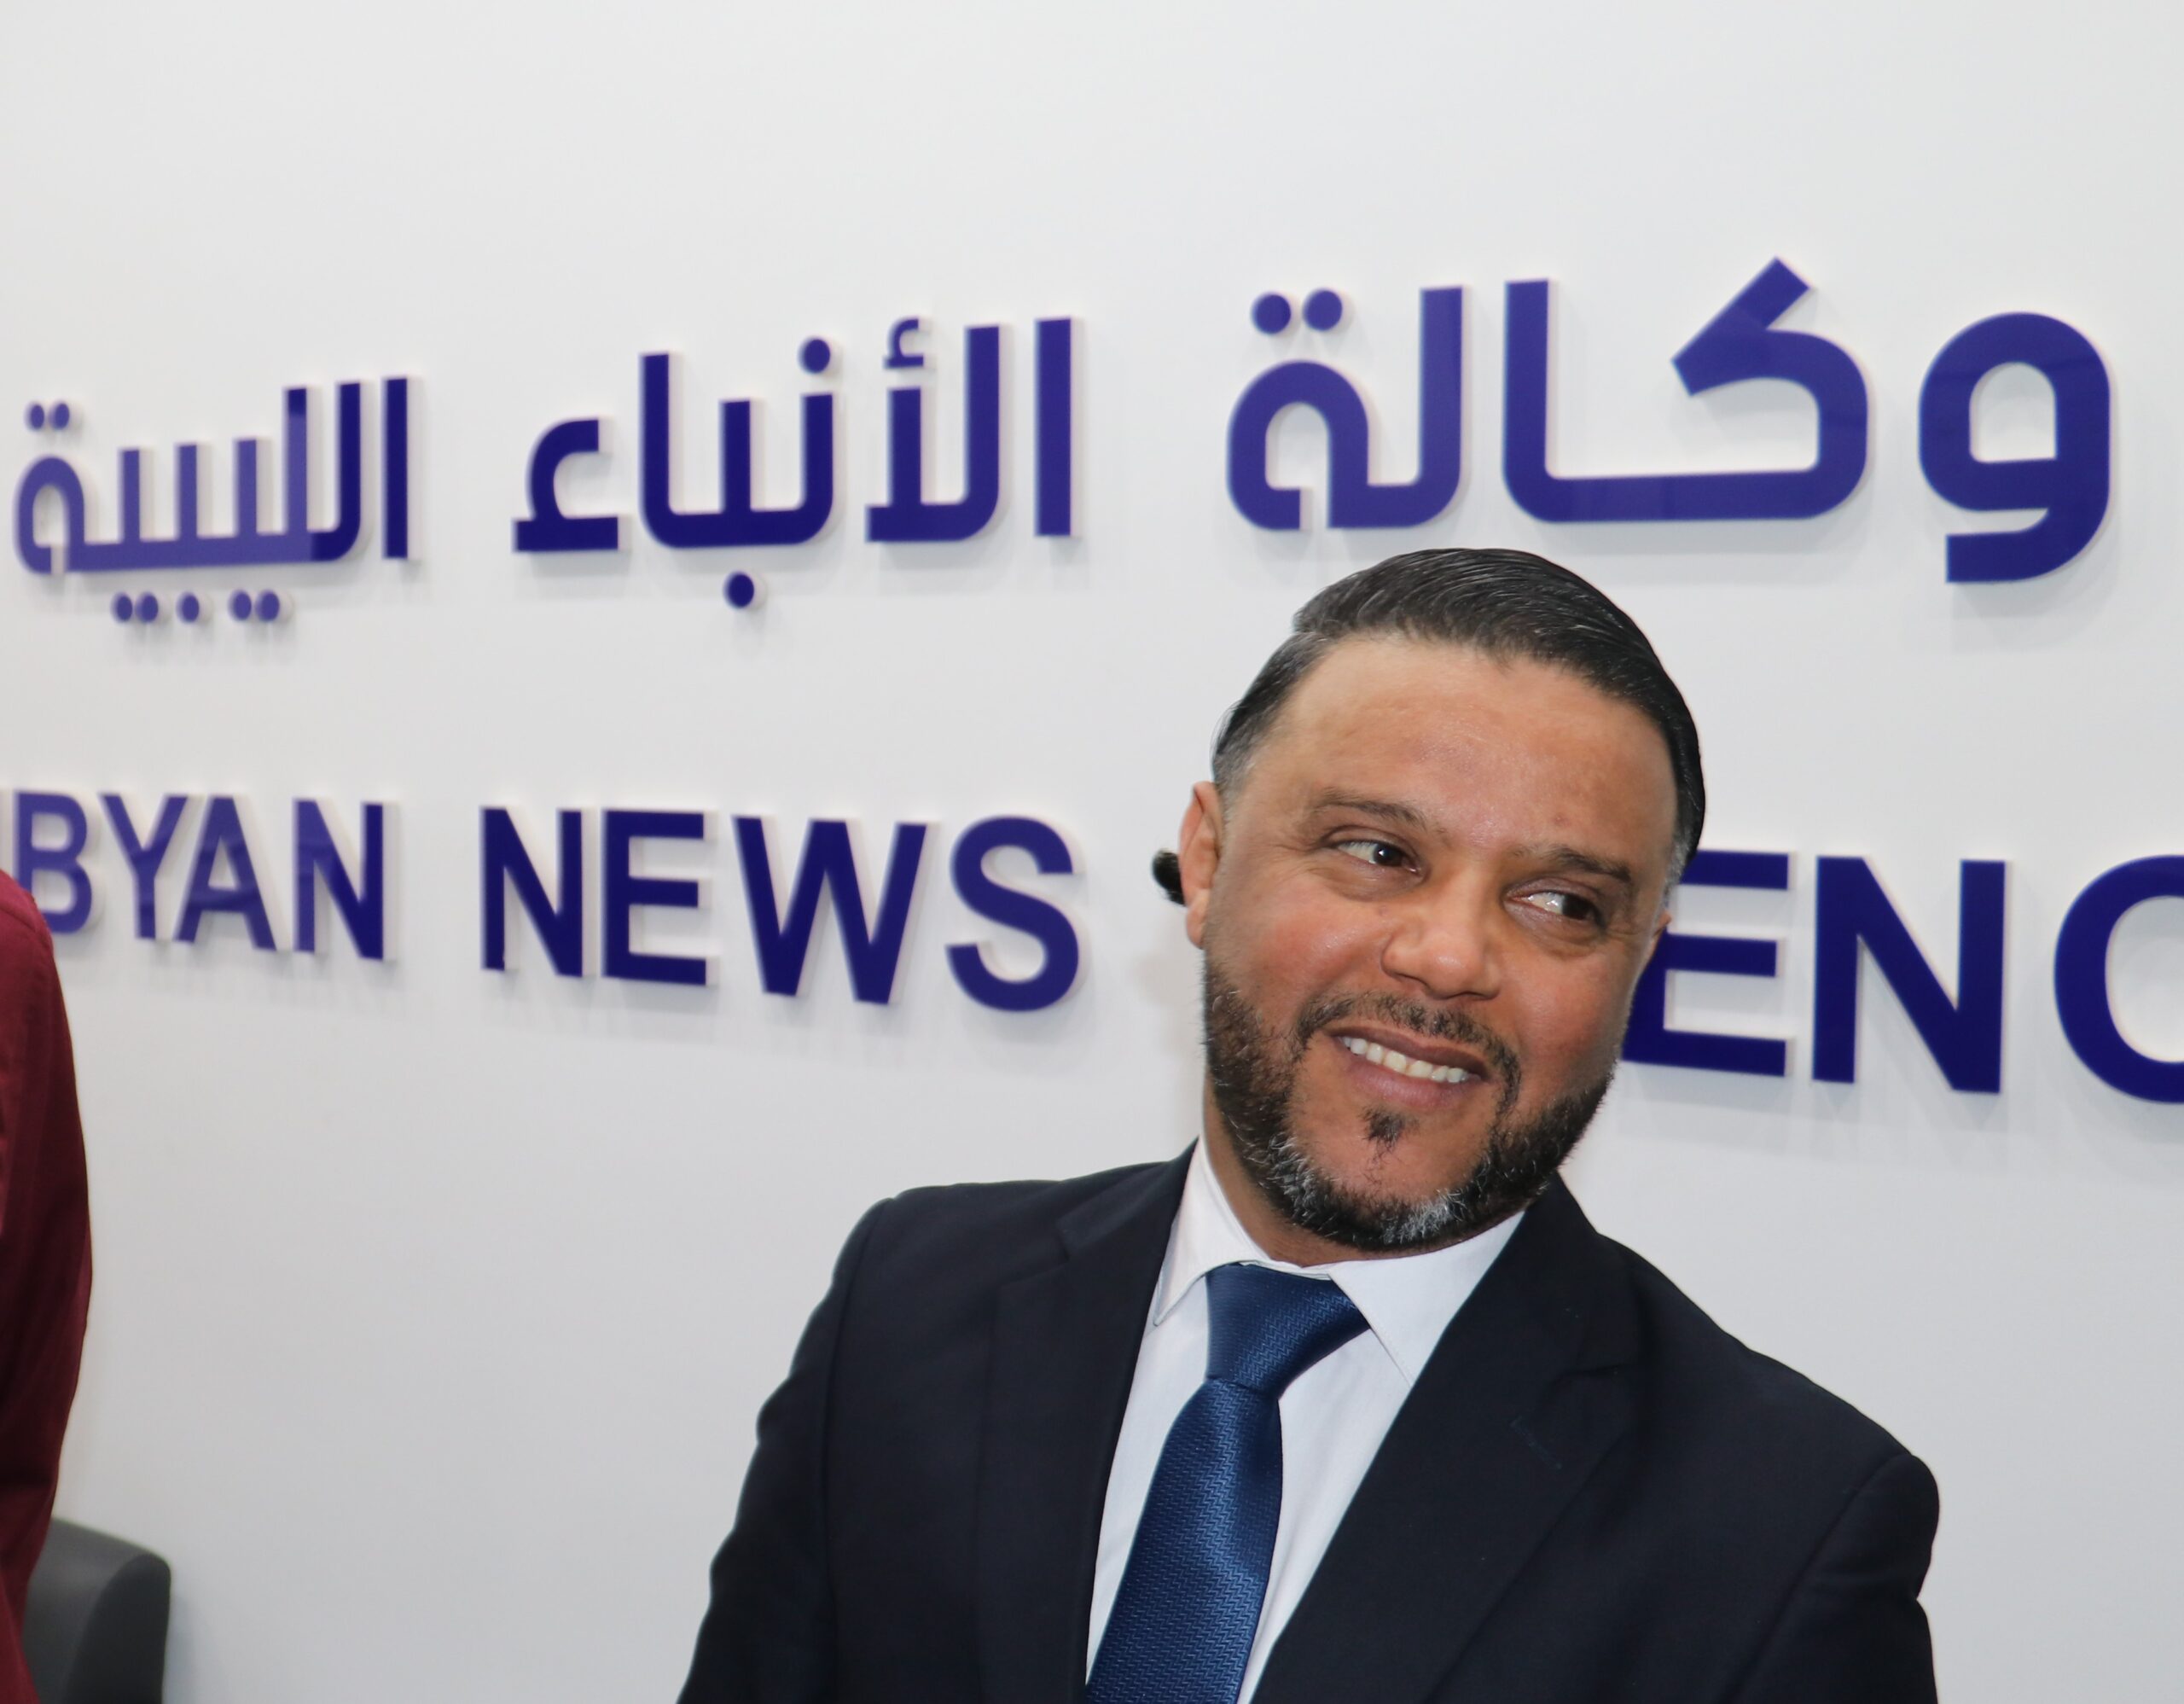 وكالة الأنباء الليبية تنعى رئيس قسم الأخبار الرياضية الصحفي سيف أمبية